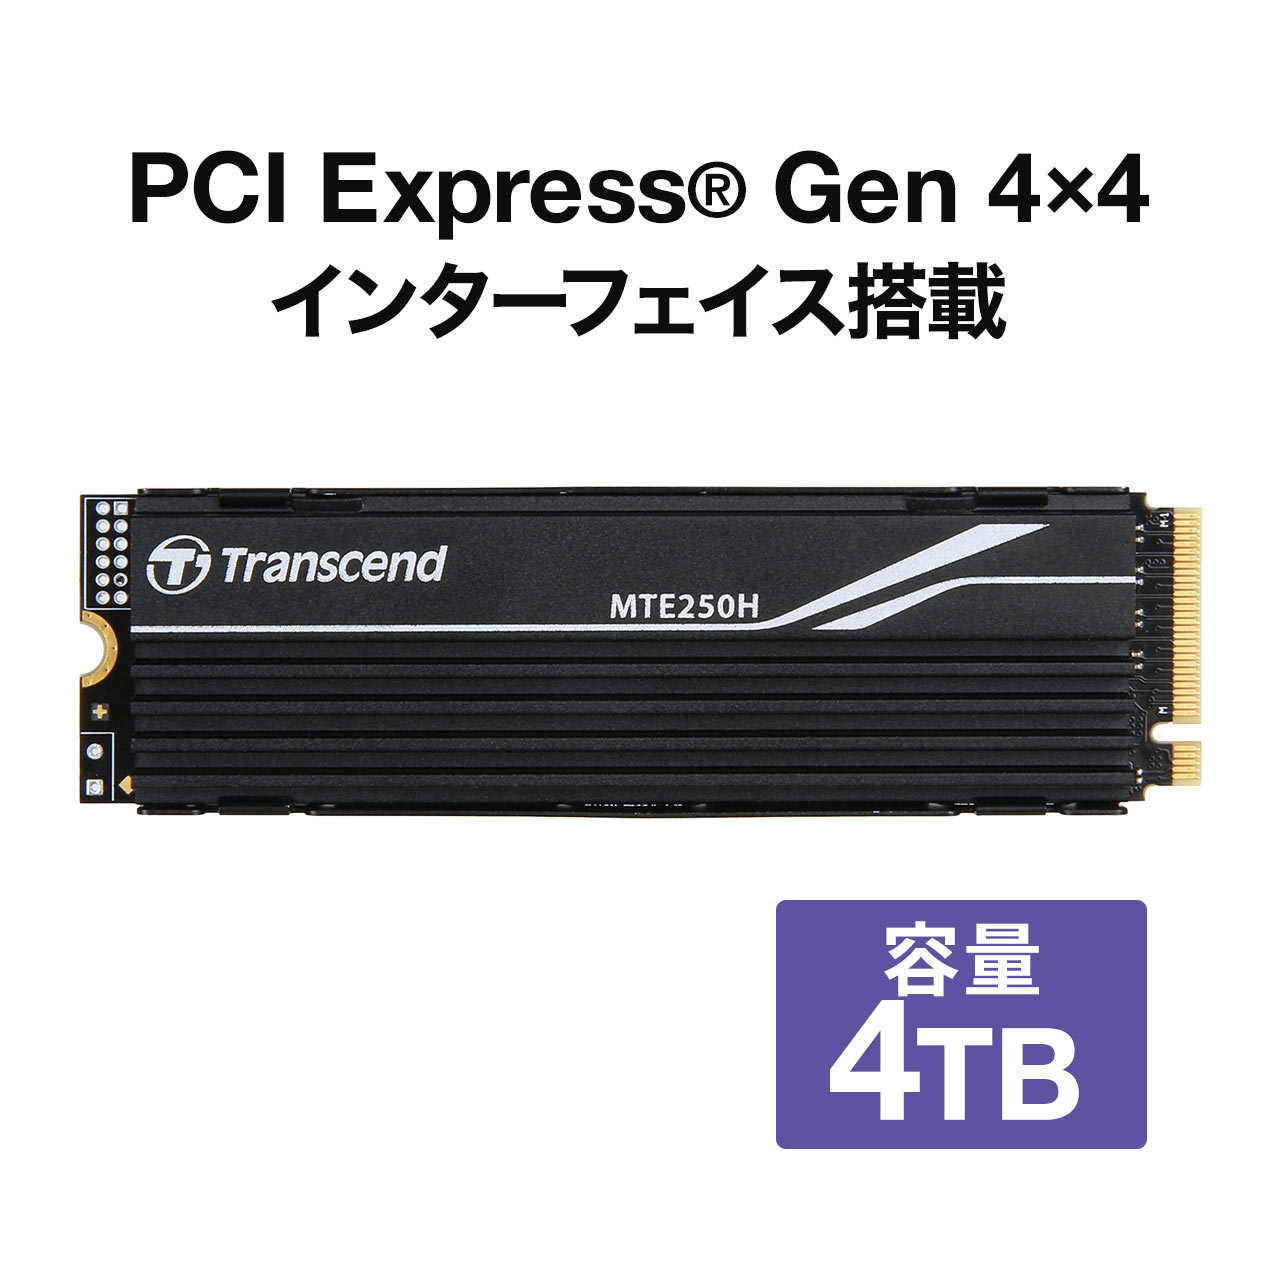 Transcend PCIe M.2 SSD 250H 4TB NVMe PCIe Gen4×4 3D NAND TS4TMTE250H